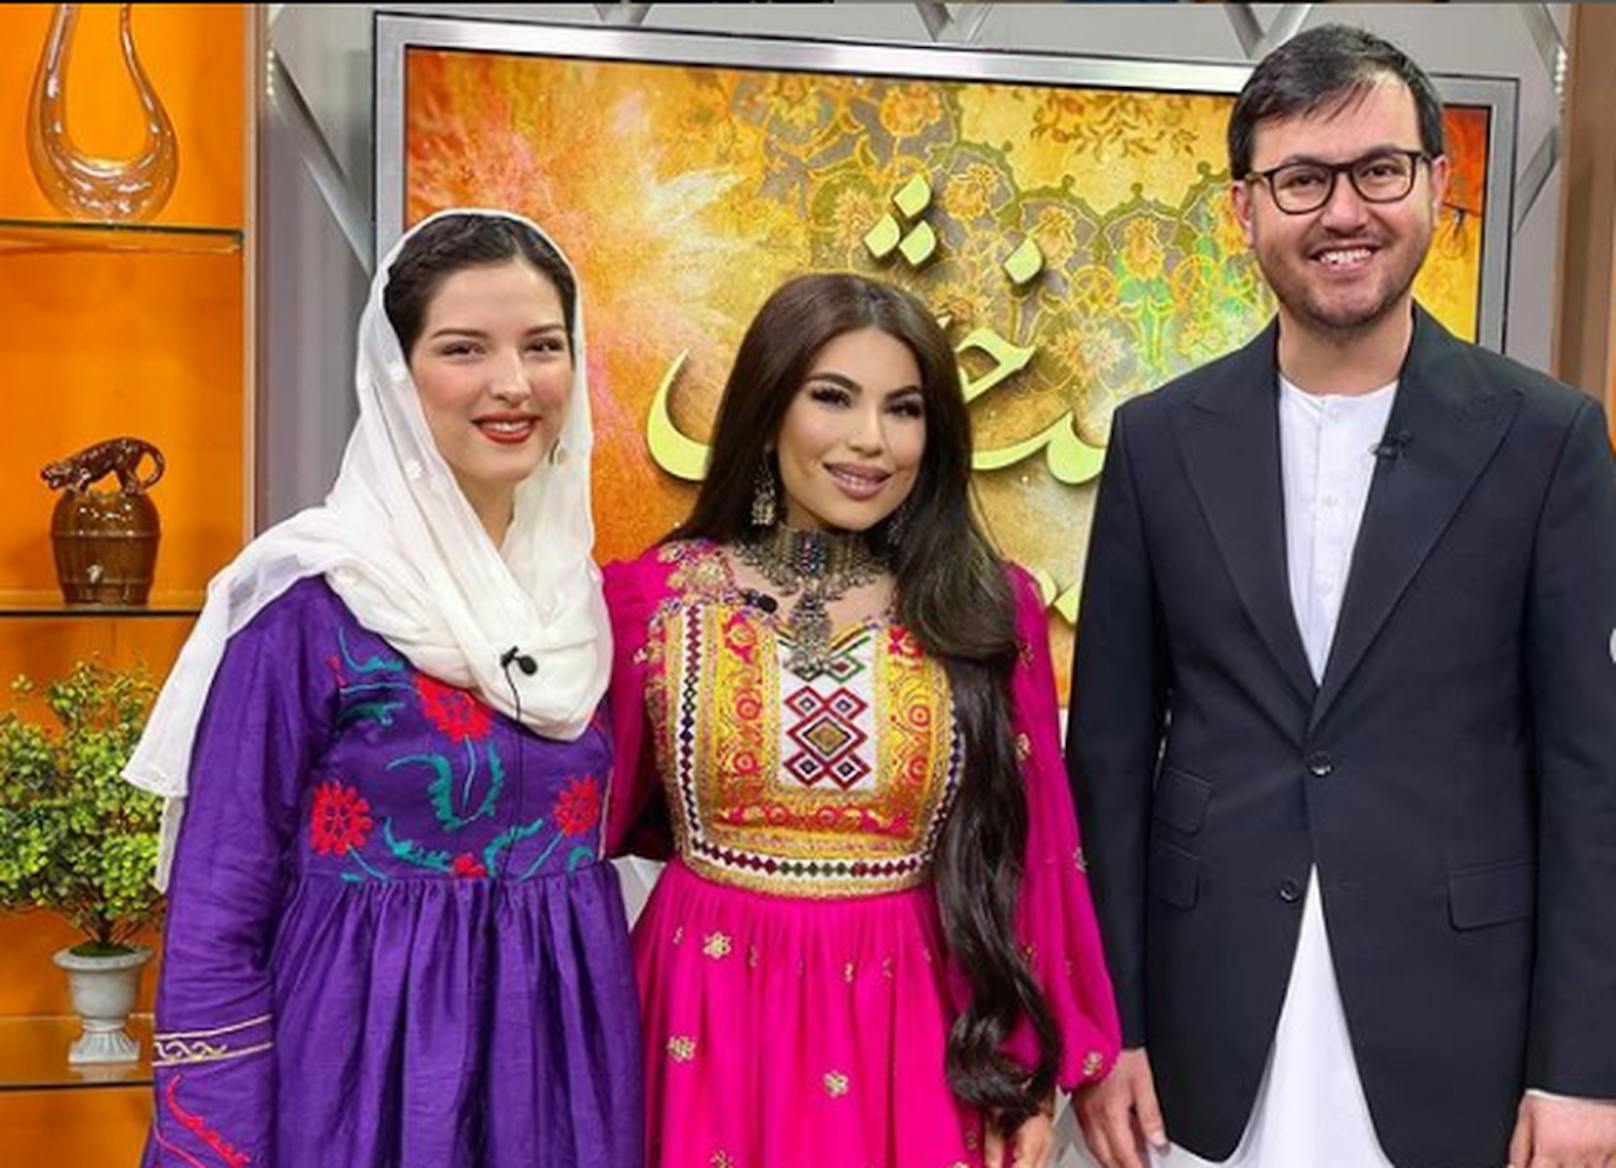 Sie moderierte mehrere Fernsehsendungen, darunter auch die afghanische Ausgabe von "The Voice".